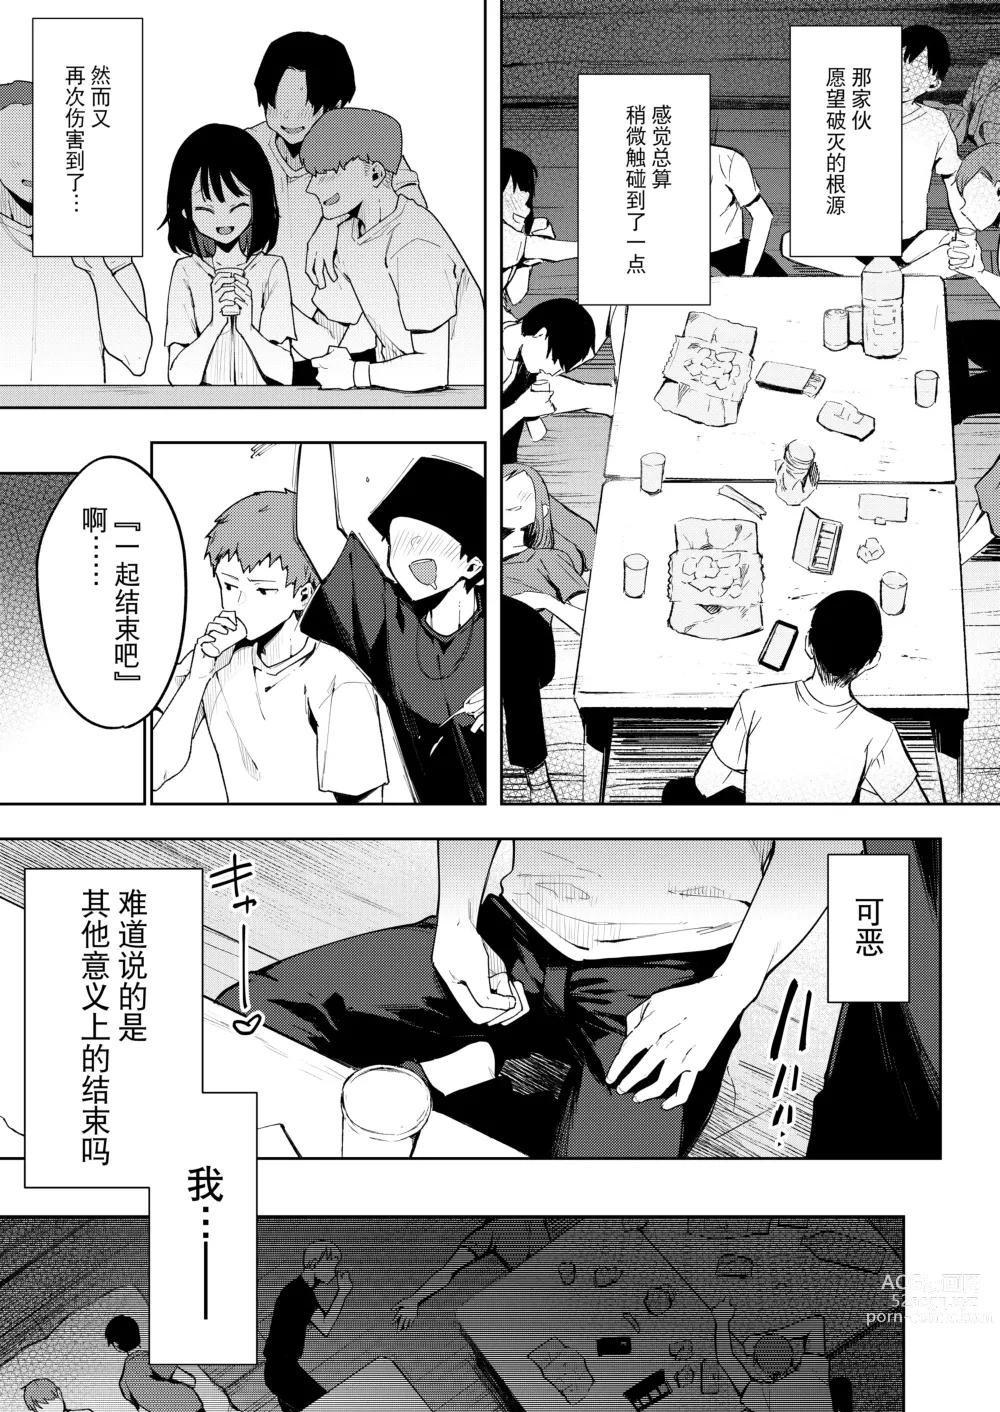 Page 165 of doujinshi Chouko I-V